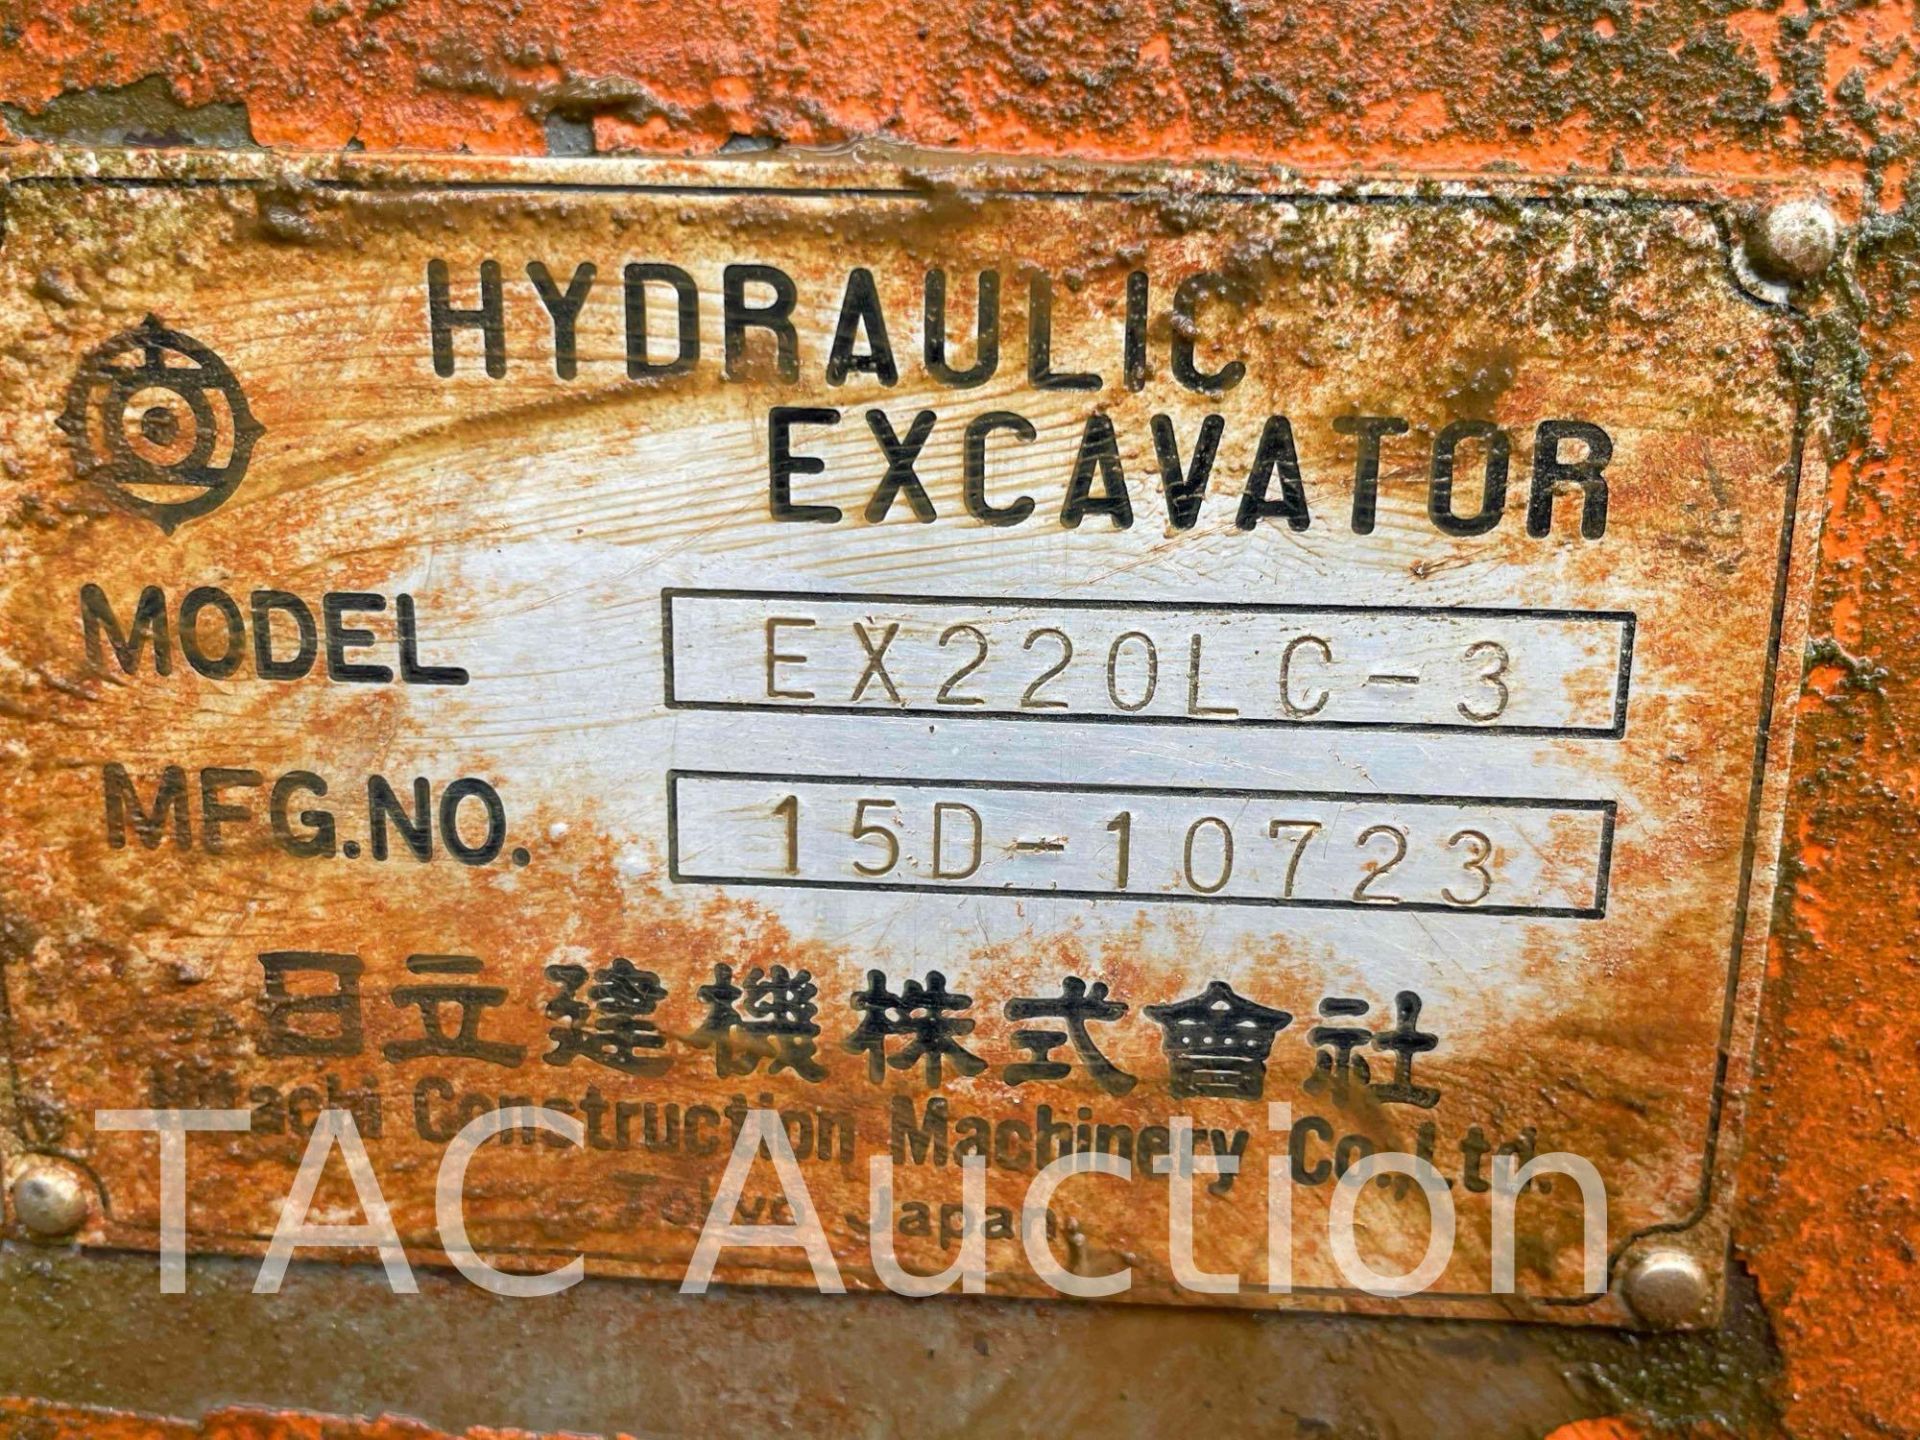 1997 Hitachi EX220LC-3 Excavator - Image 38 of 38